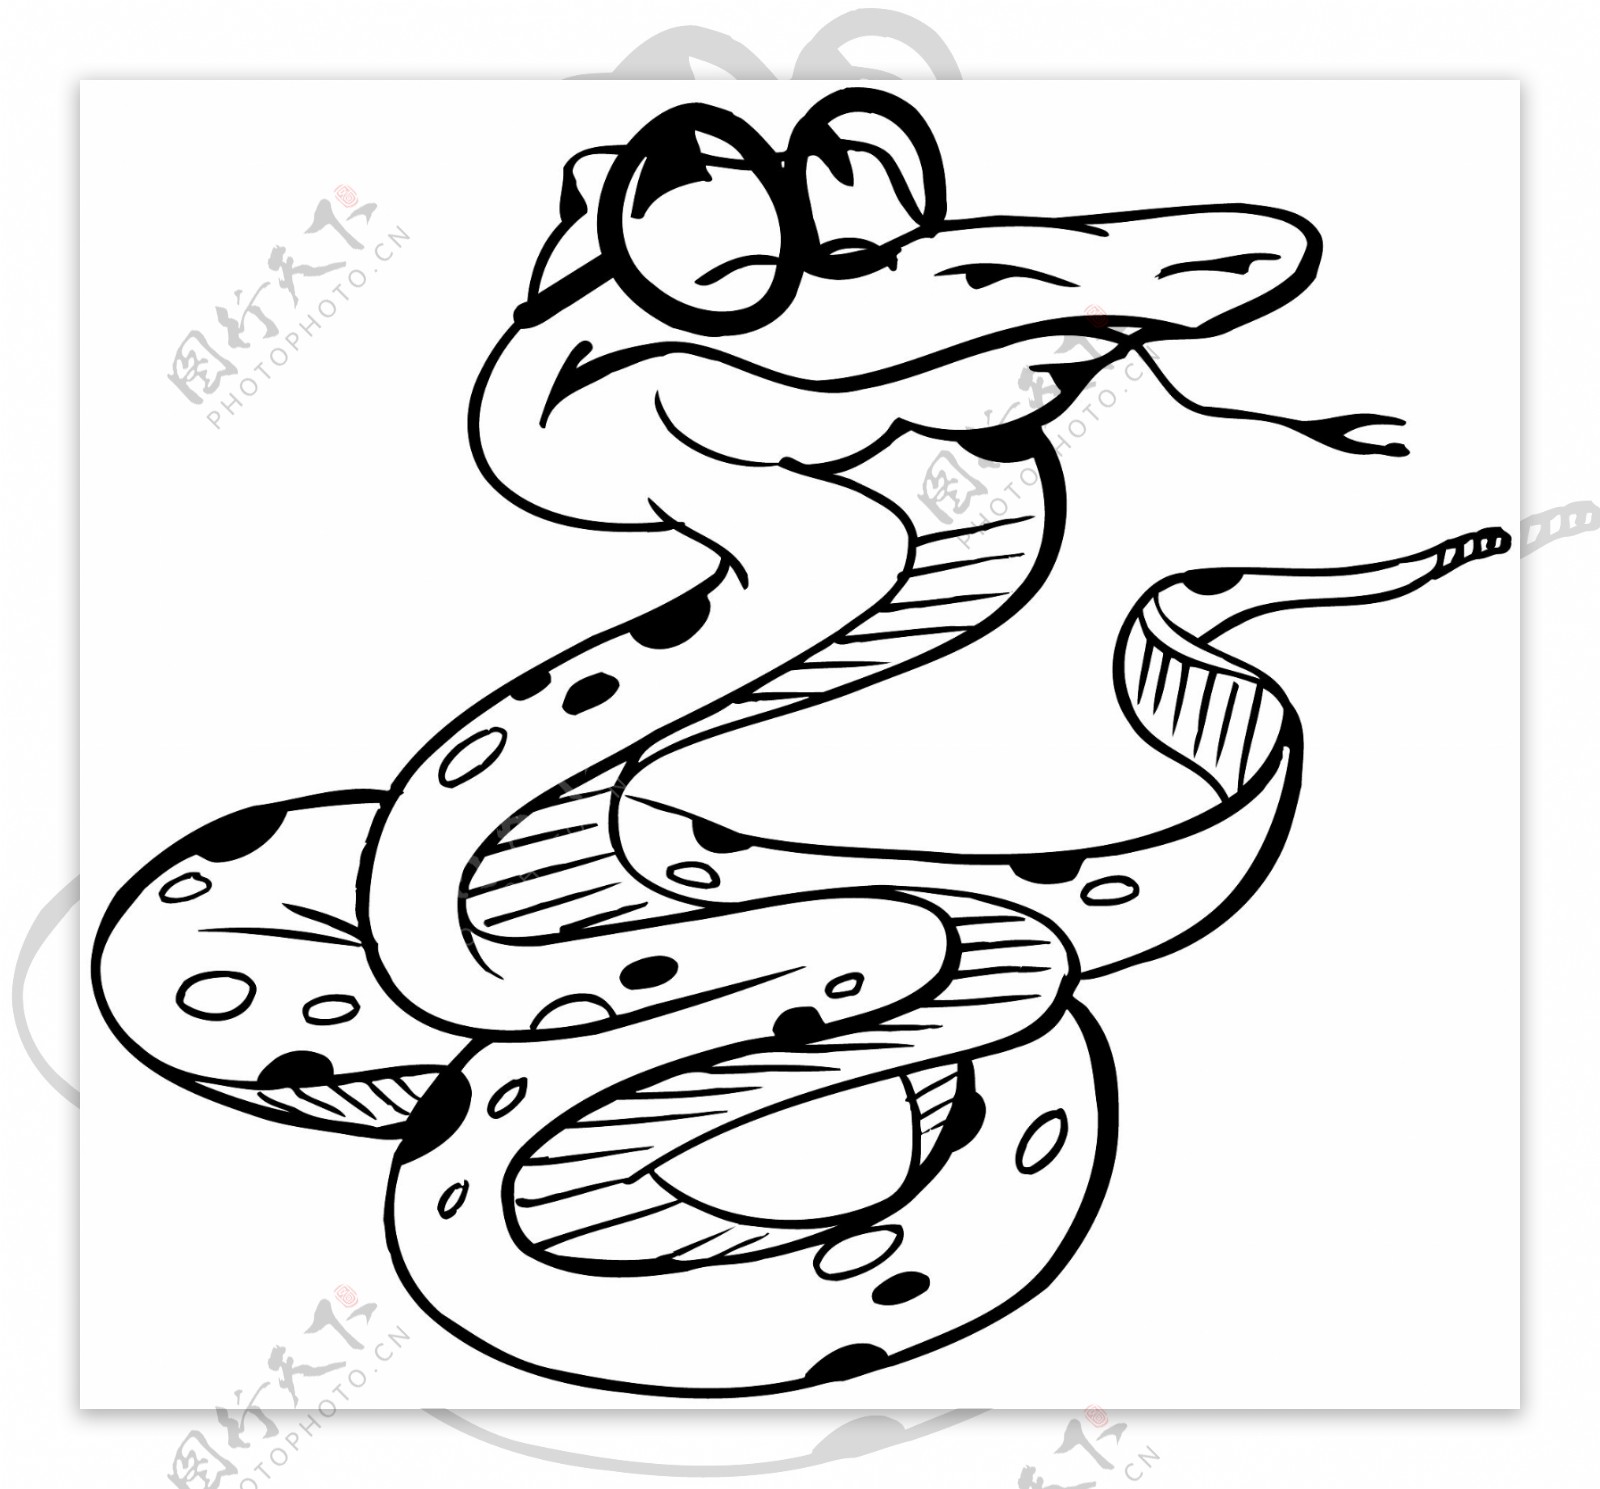 蛇爬行动物矢量素材eps格式0034